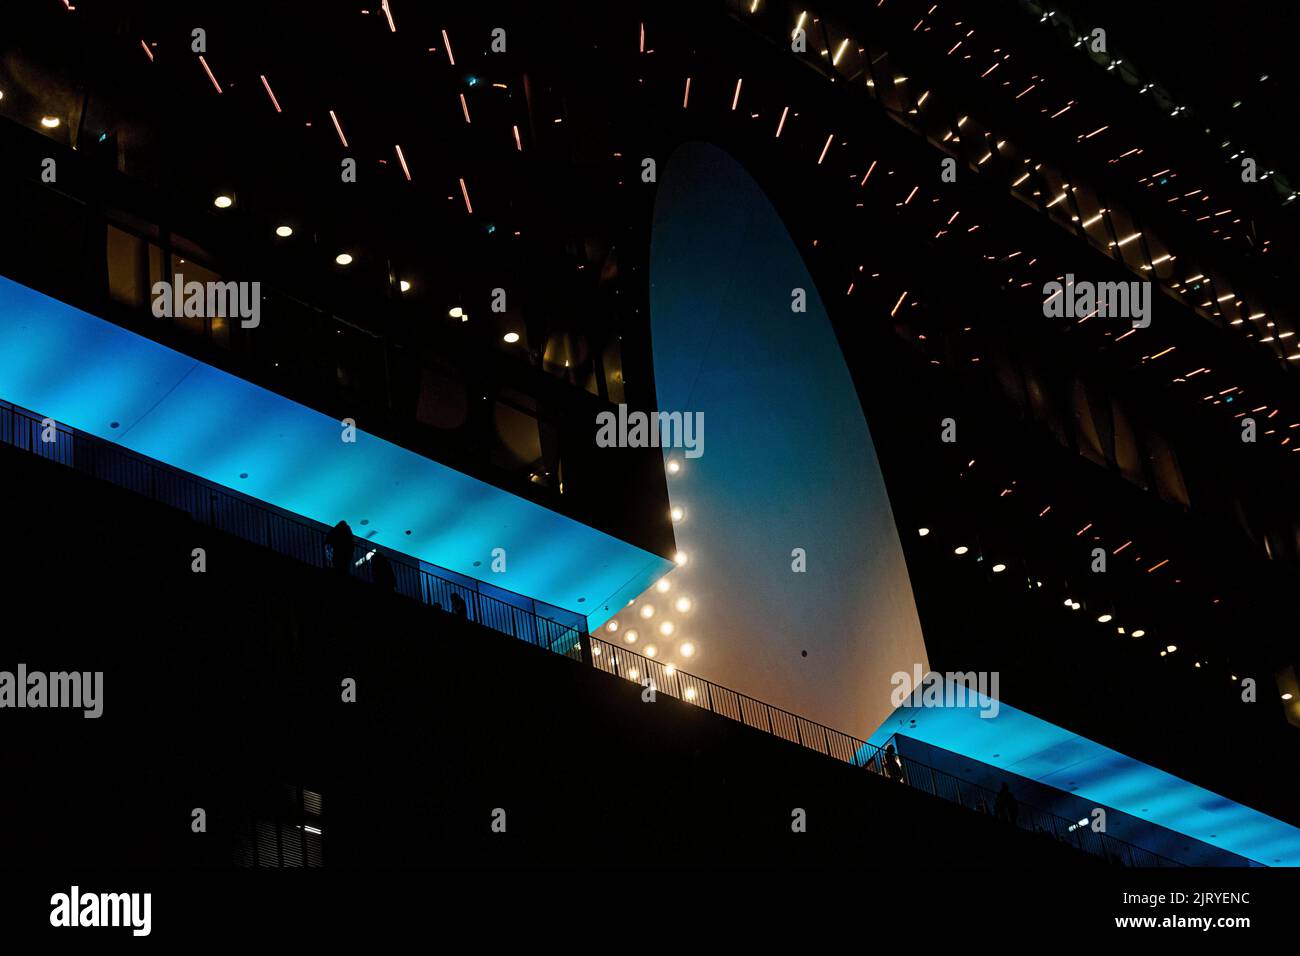 Terrasse d'observation de la Plaza avec visiteurs, silhouettes dans l'obscurité, illuminées en bleu, salle philharmonique d'Elbe dans la soirée, vue d'en dessous, Hambourg Banque D'Images